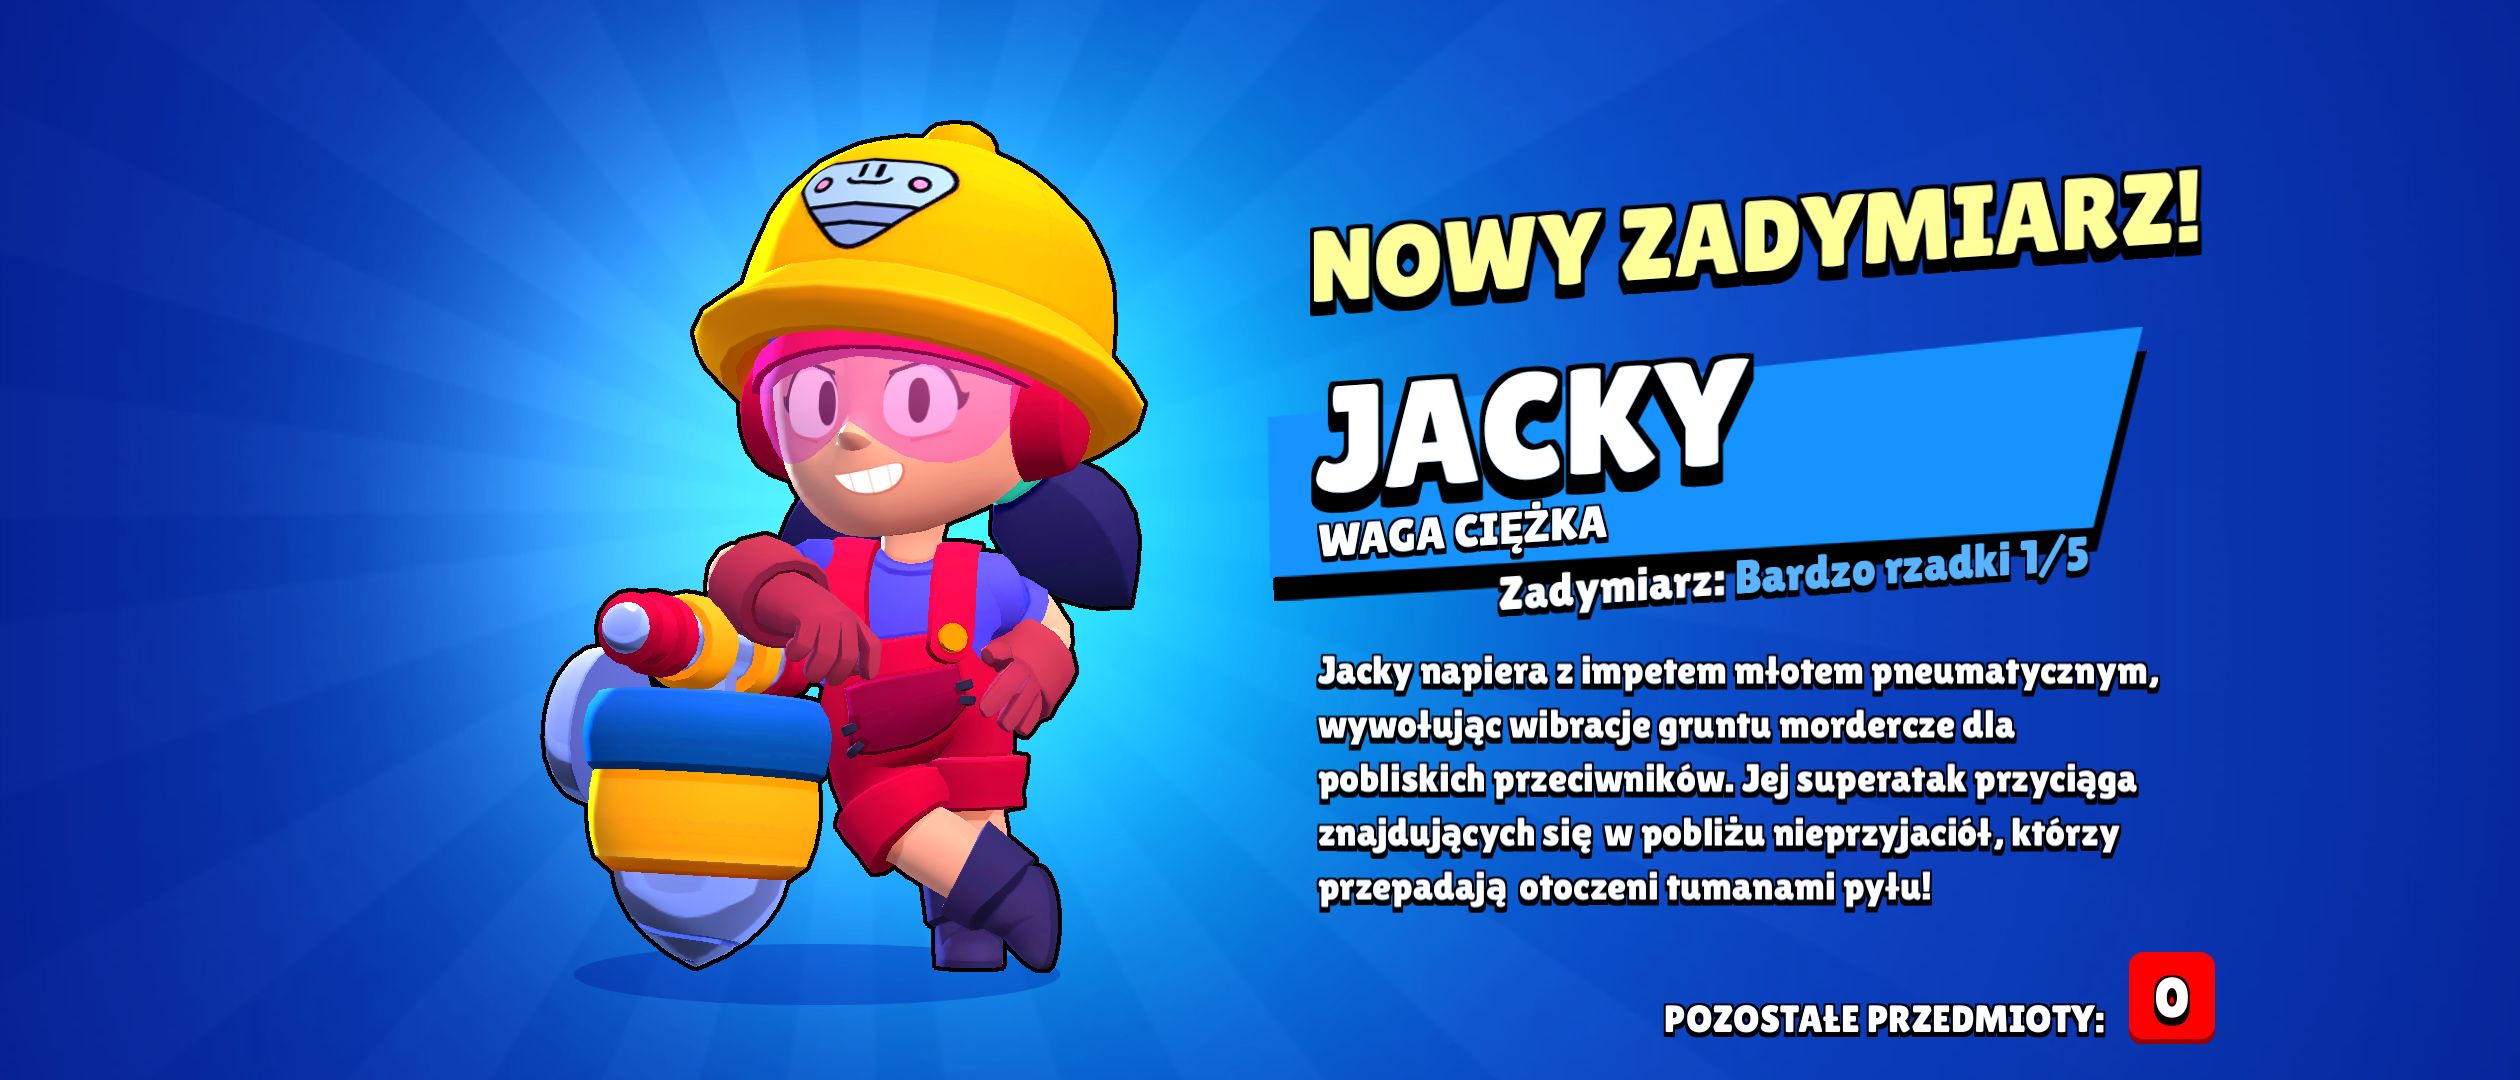 jacky